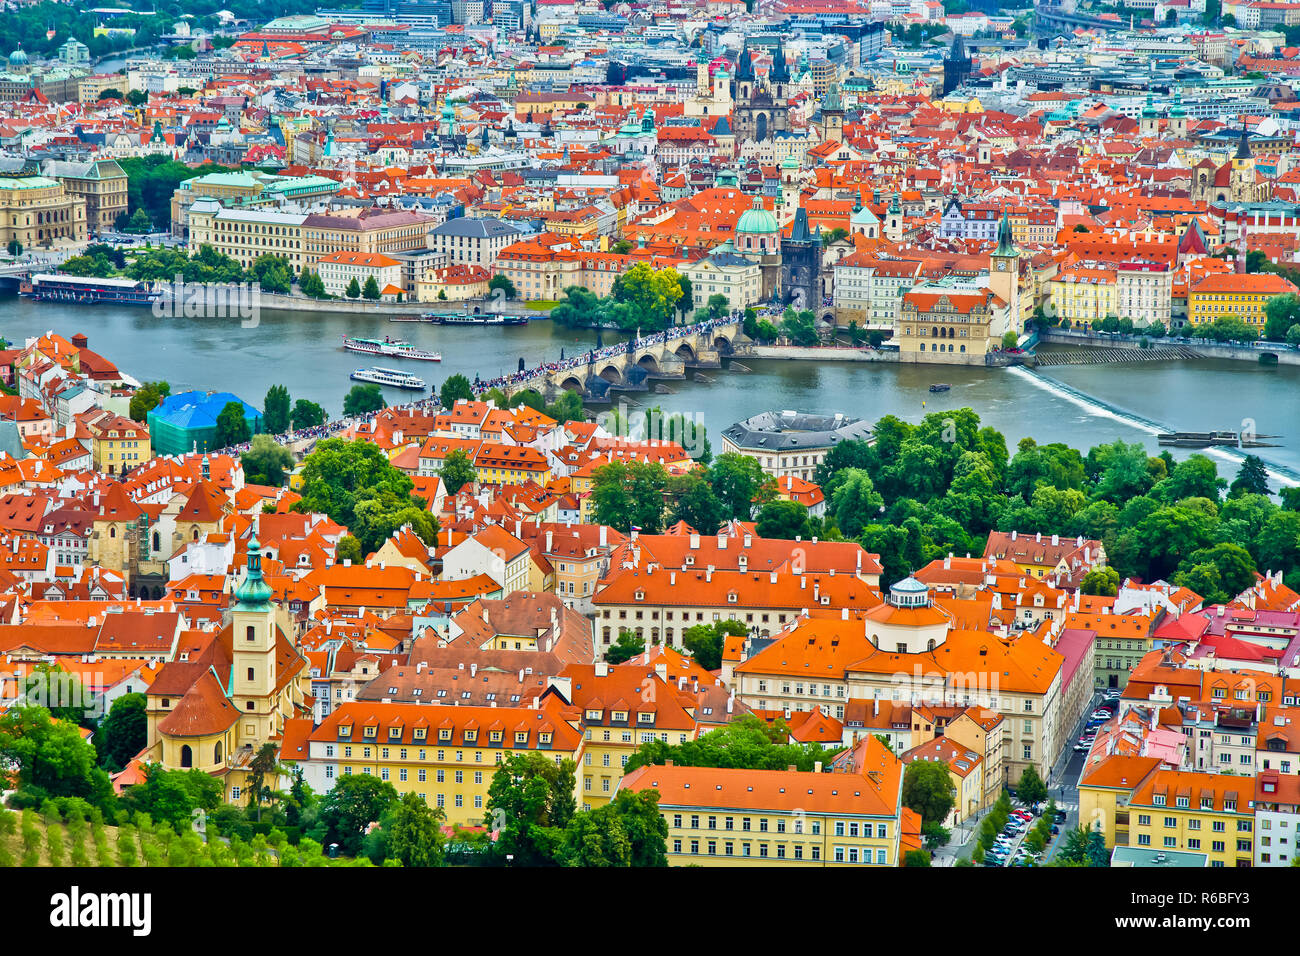 Praga es la capital y ciudad más grande de la República Checa, la 14ª ciudad más grande de la Unión Europea y la capital histórica de Bohemia. Foto de stock